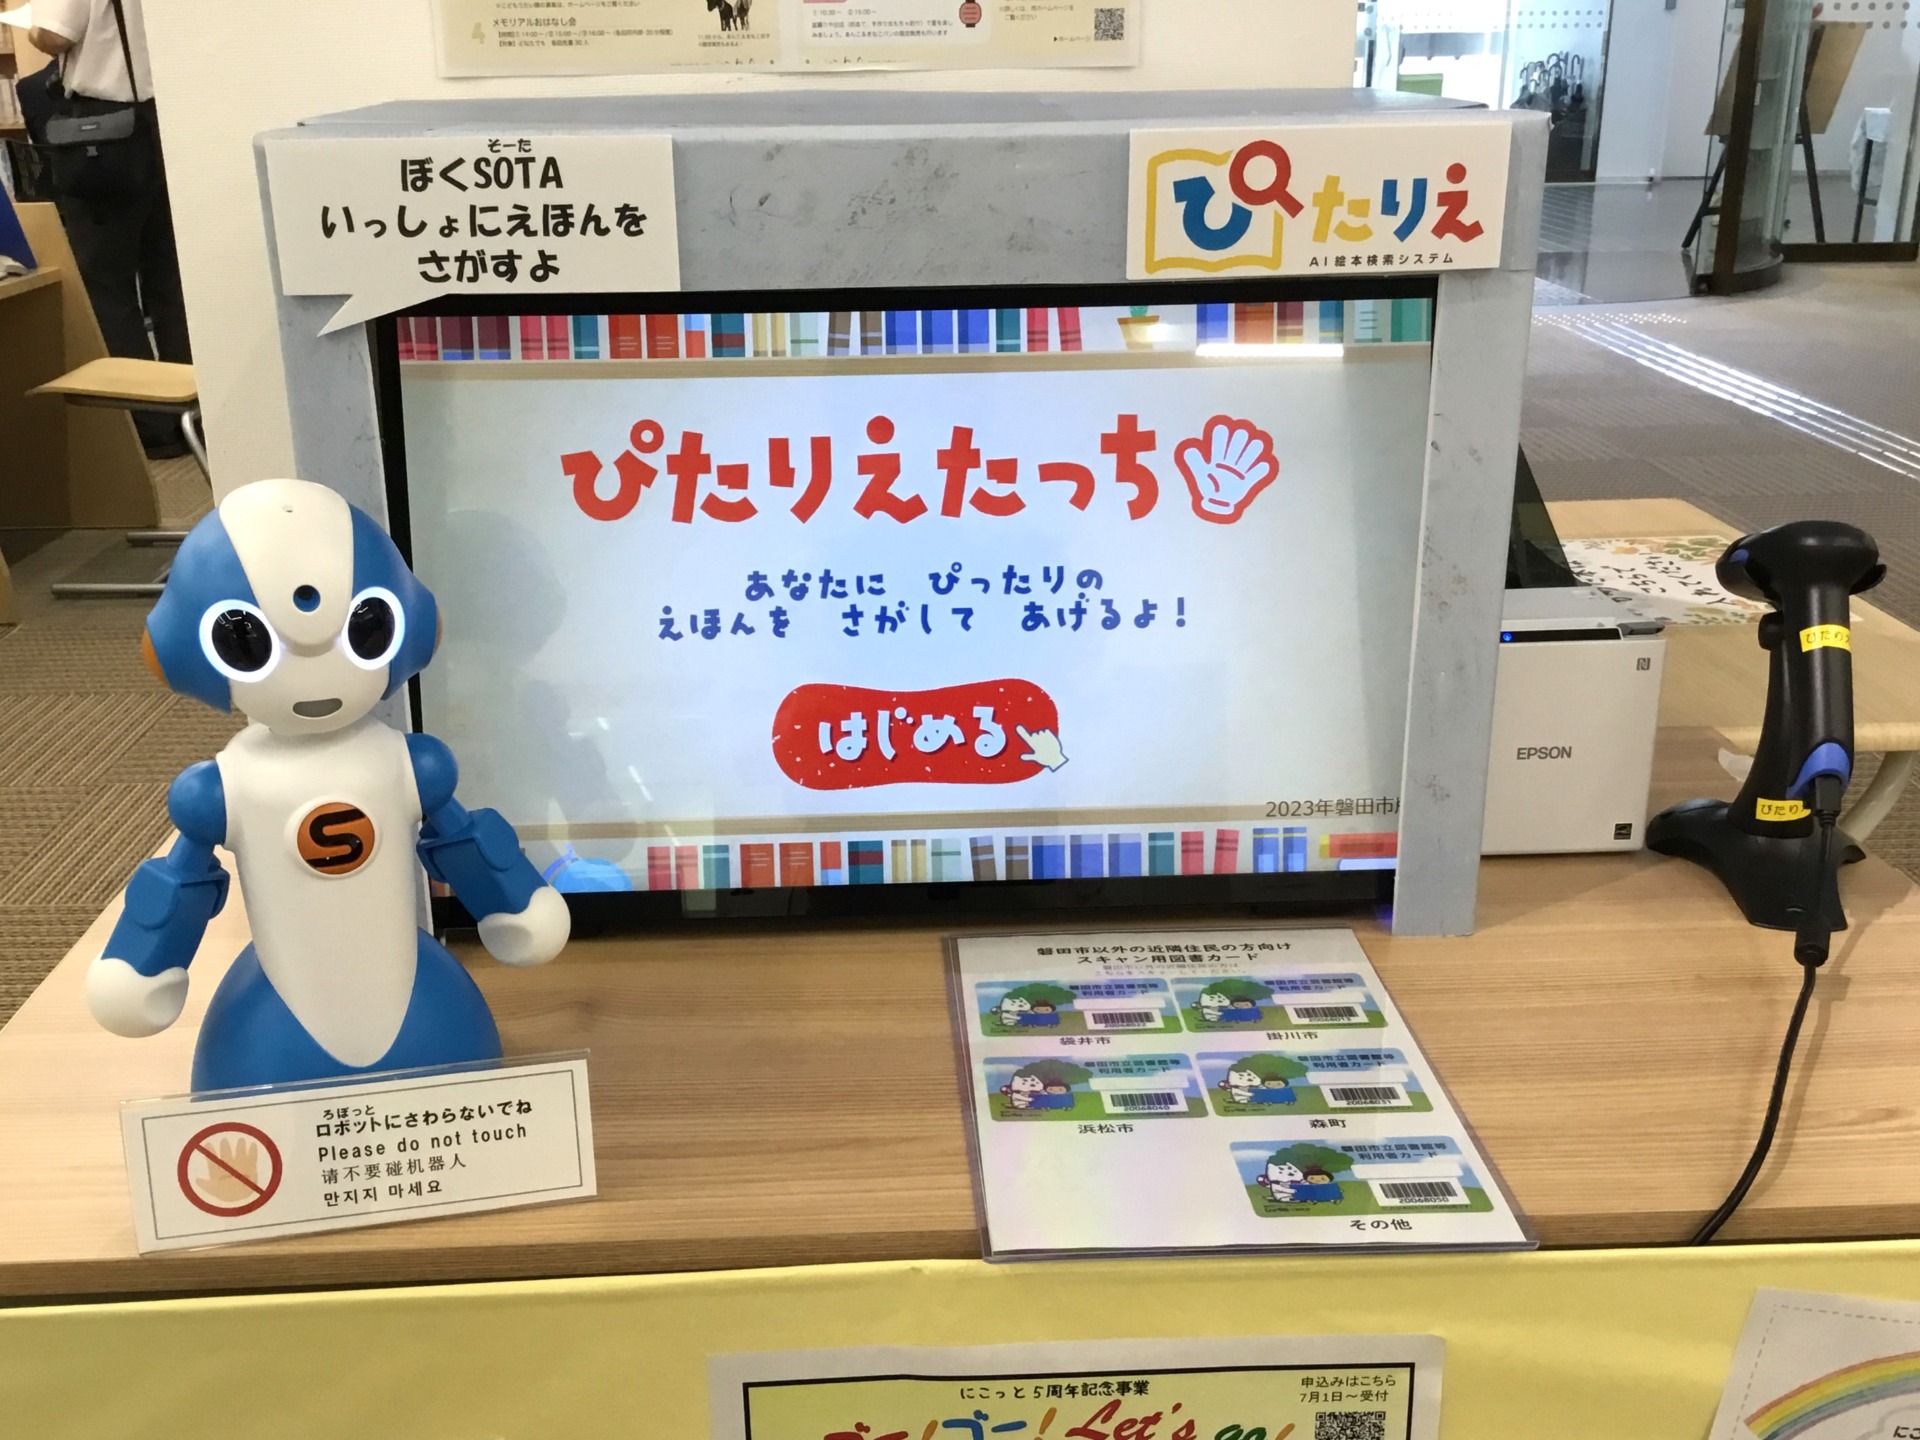 質問に答えるとAIがオススメの本を選定　磐田市で静岡県初のシステム導入